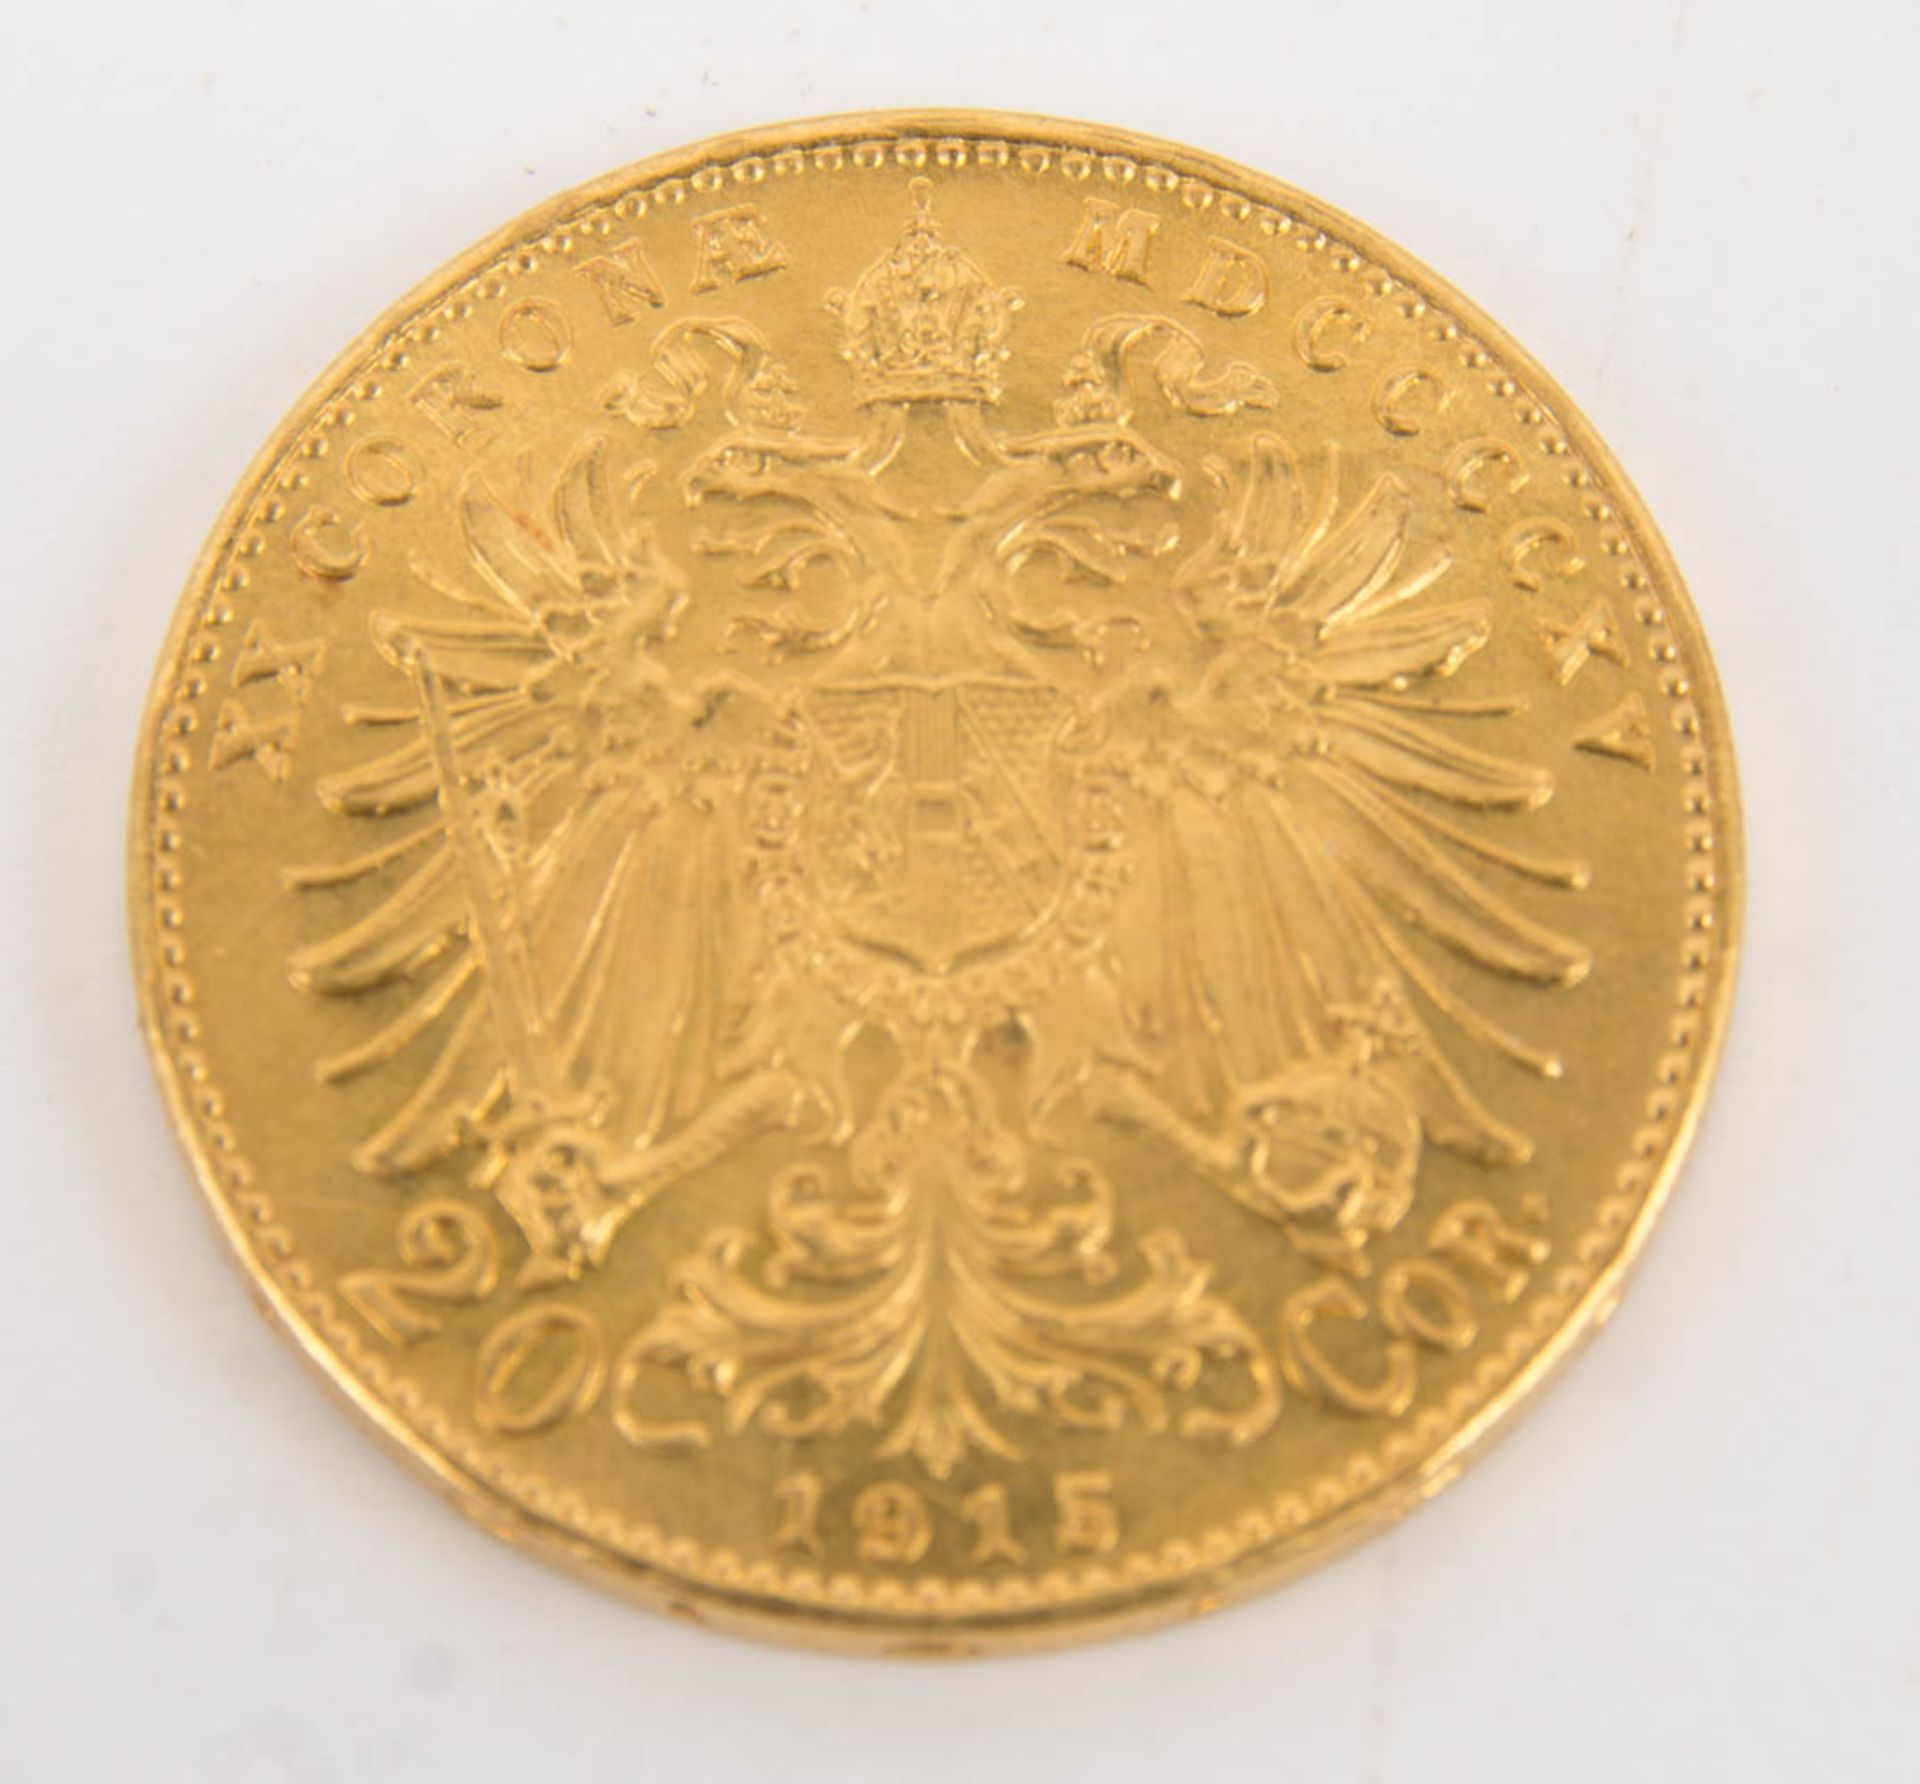 Österreich: 2x Goldmünze 20 Kronen, Nachprägung 1915. - Bild 2 aus 7